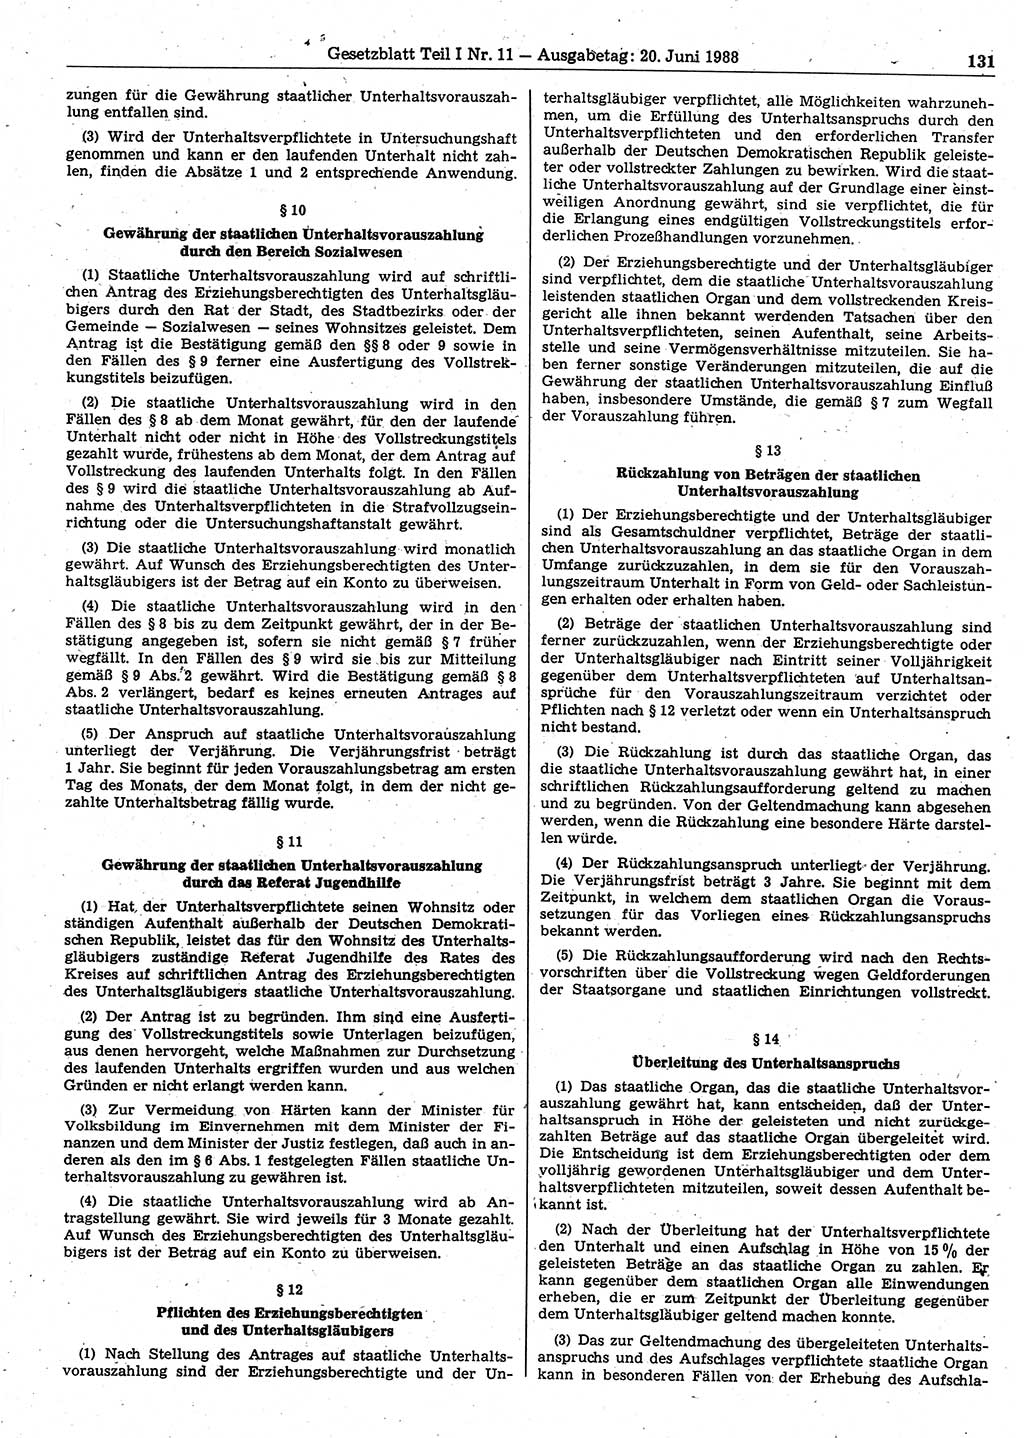 Gesetzblatt (GBl.) der Deutschen Demokratischen Republik (DDR) Teil Ⅰ 1988, Seite 131 (GBl. DDR Ⅰ 1988, S. 131)